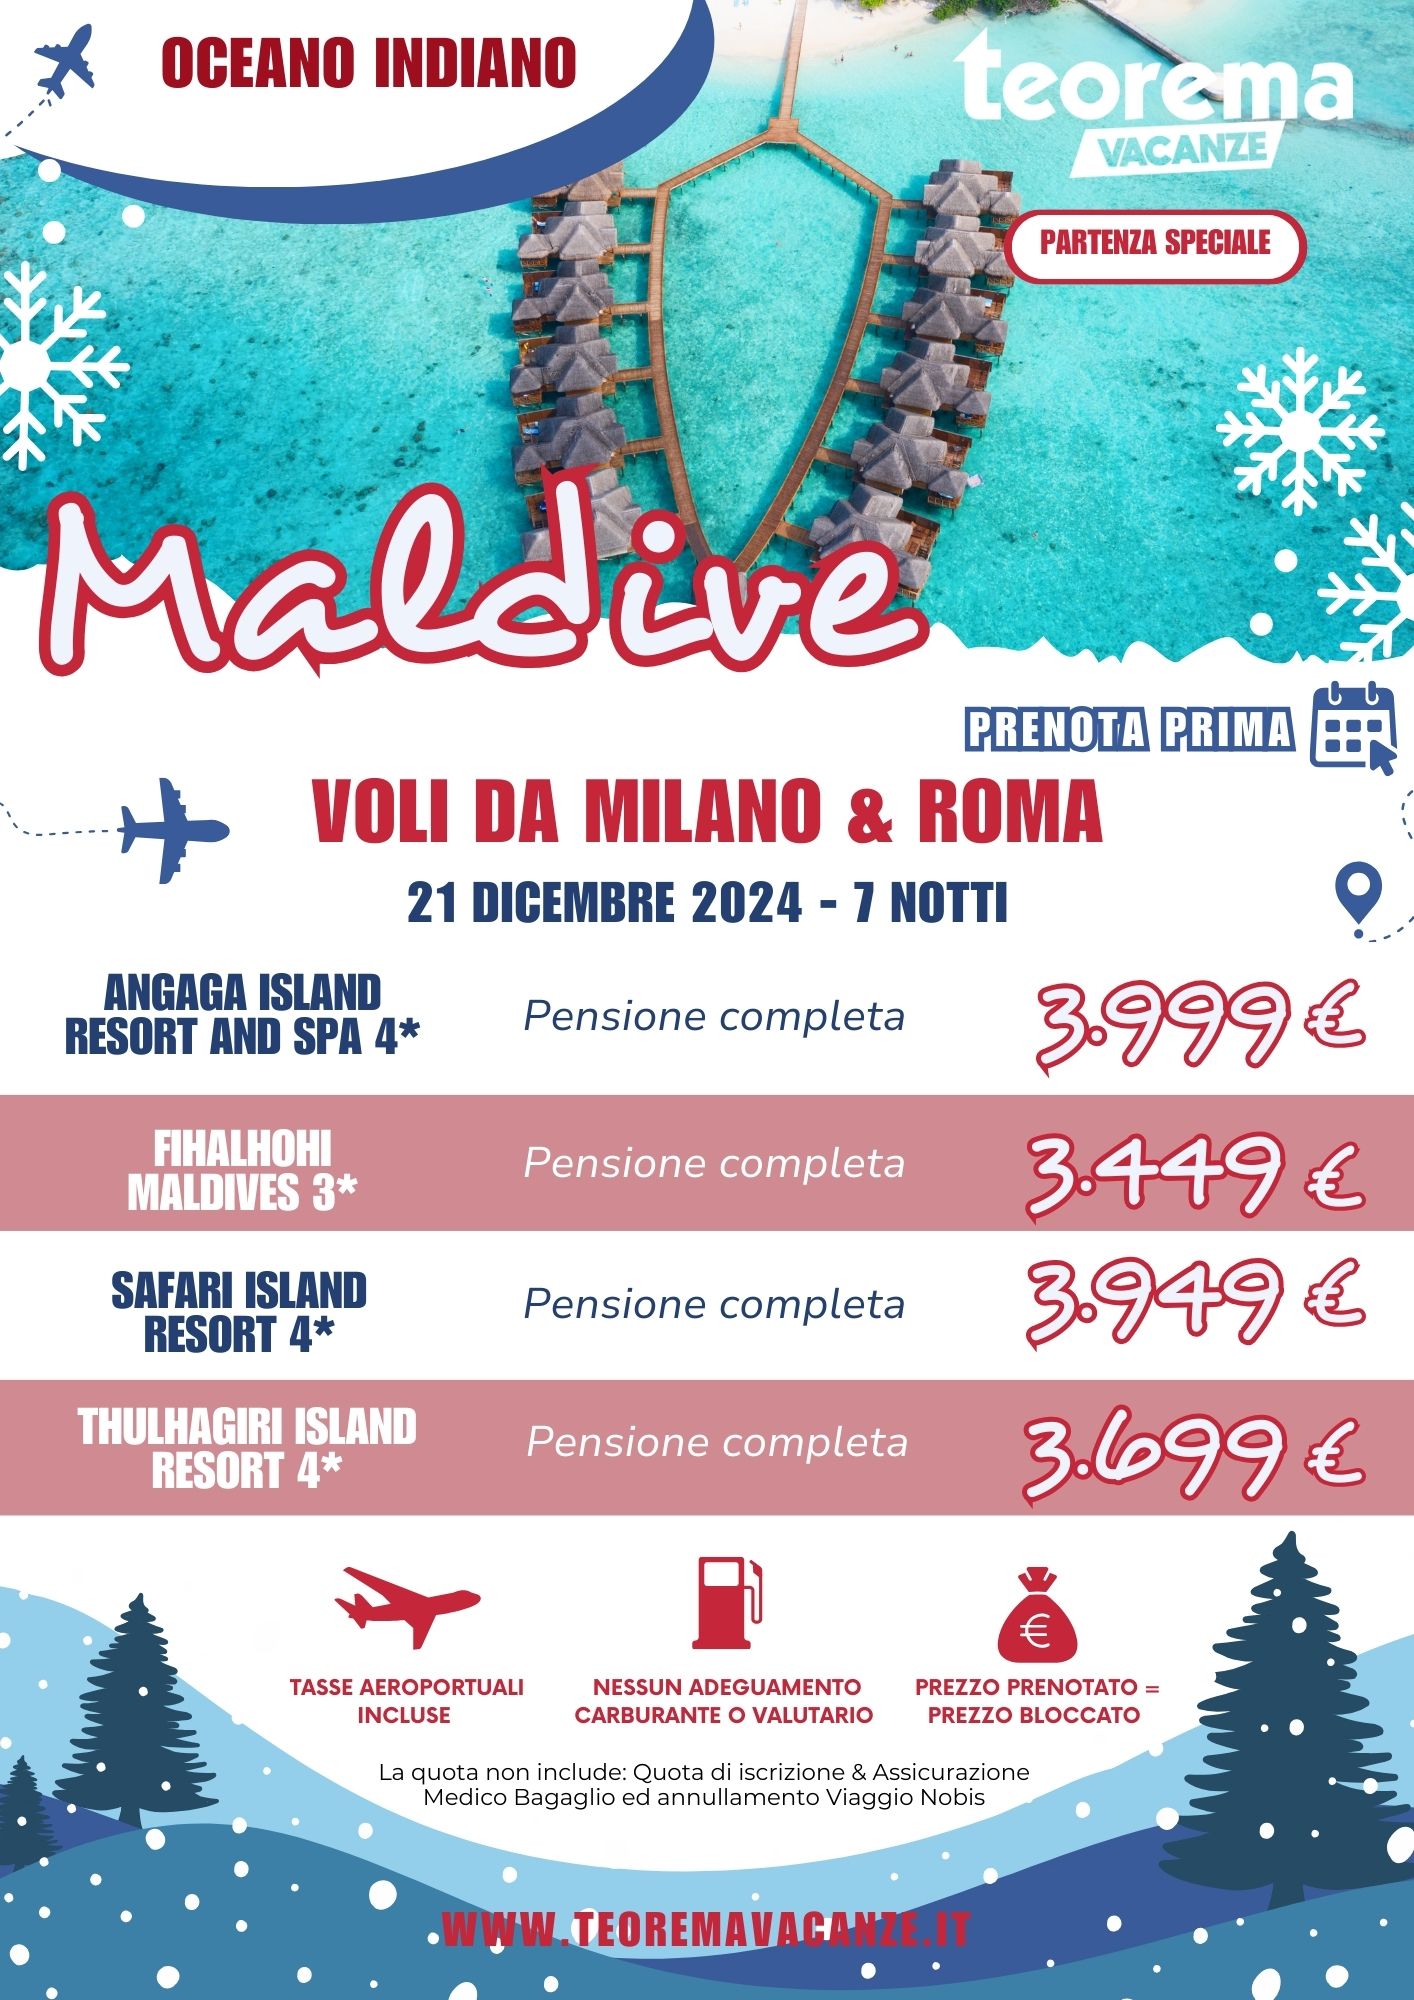 TEOREMA WINTER 2025 -  MALDIVE DA MILANO & ROMA